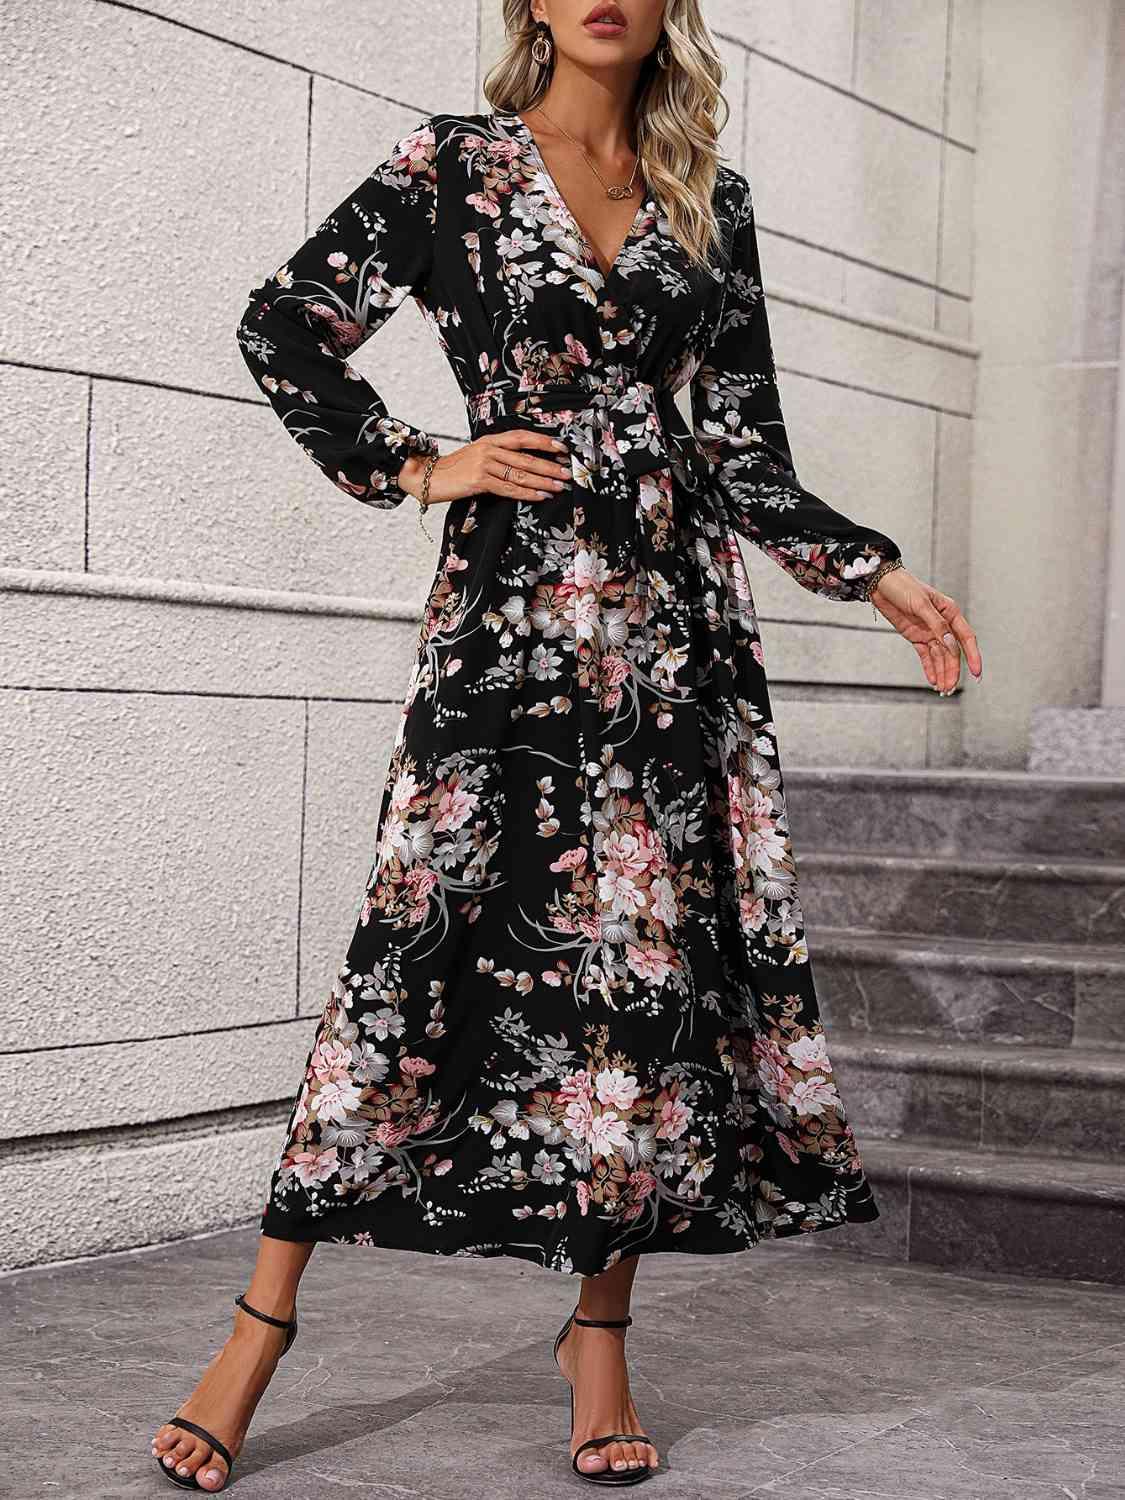 a woman wearing a black floral print dress